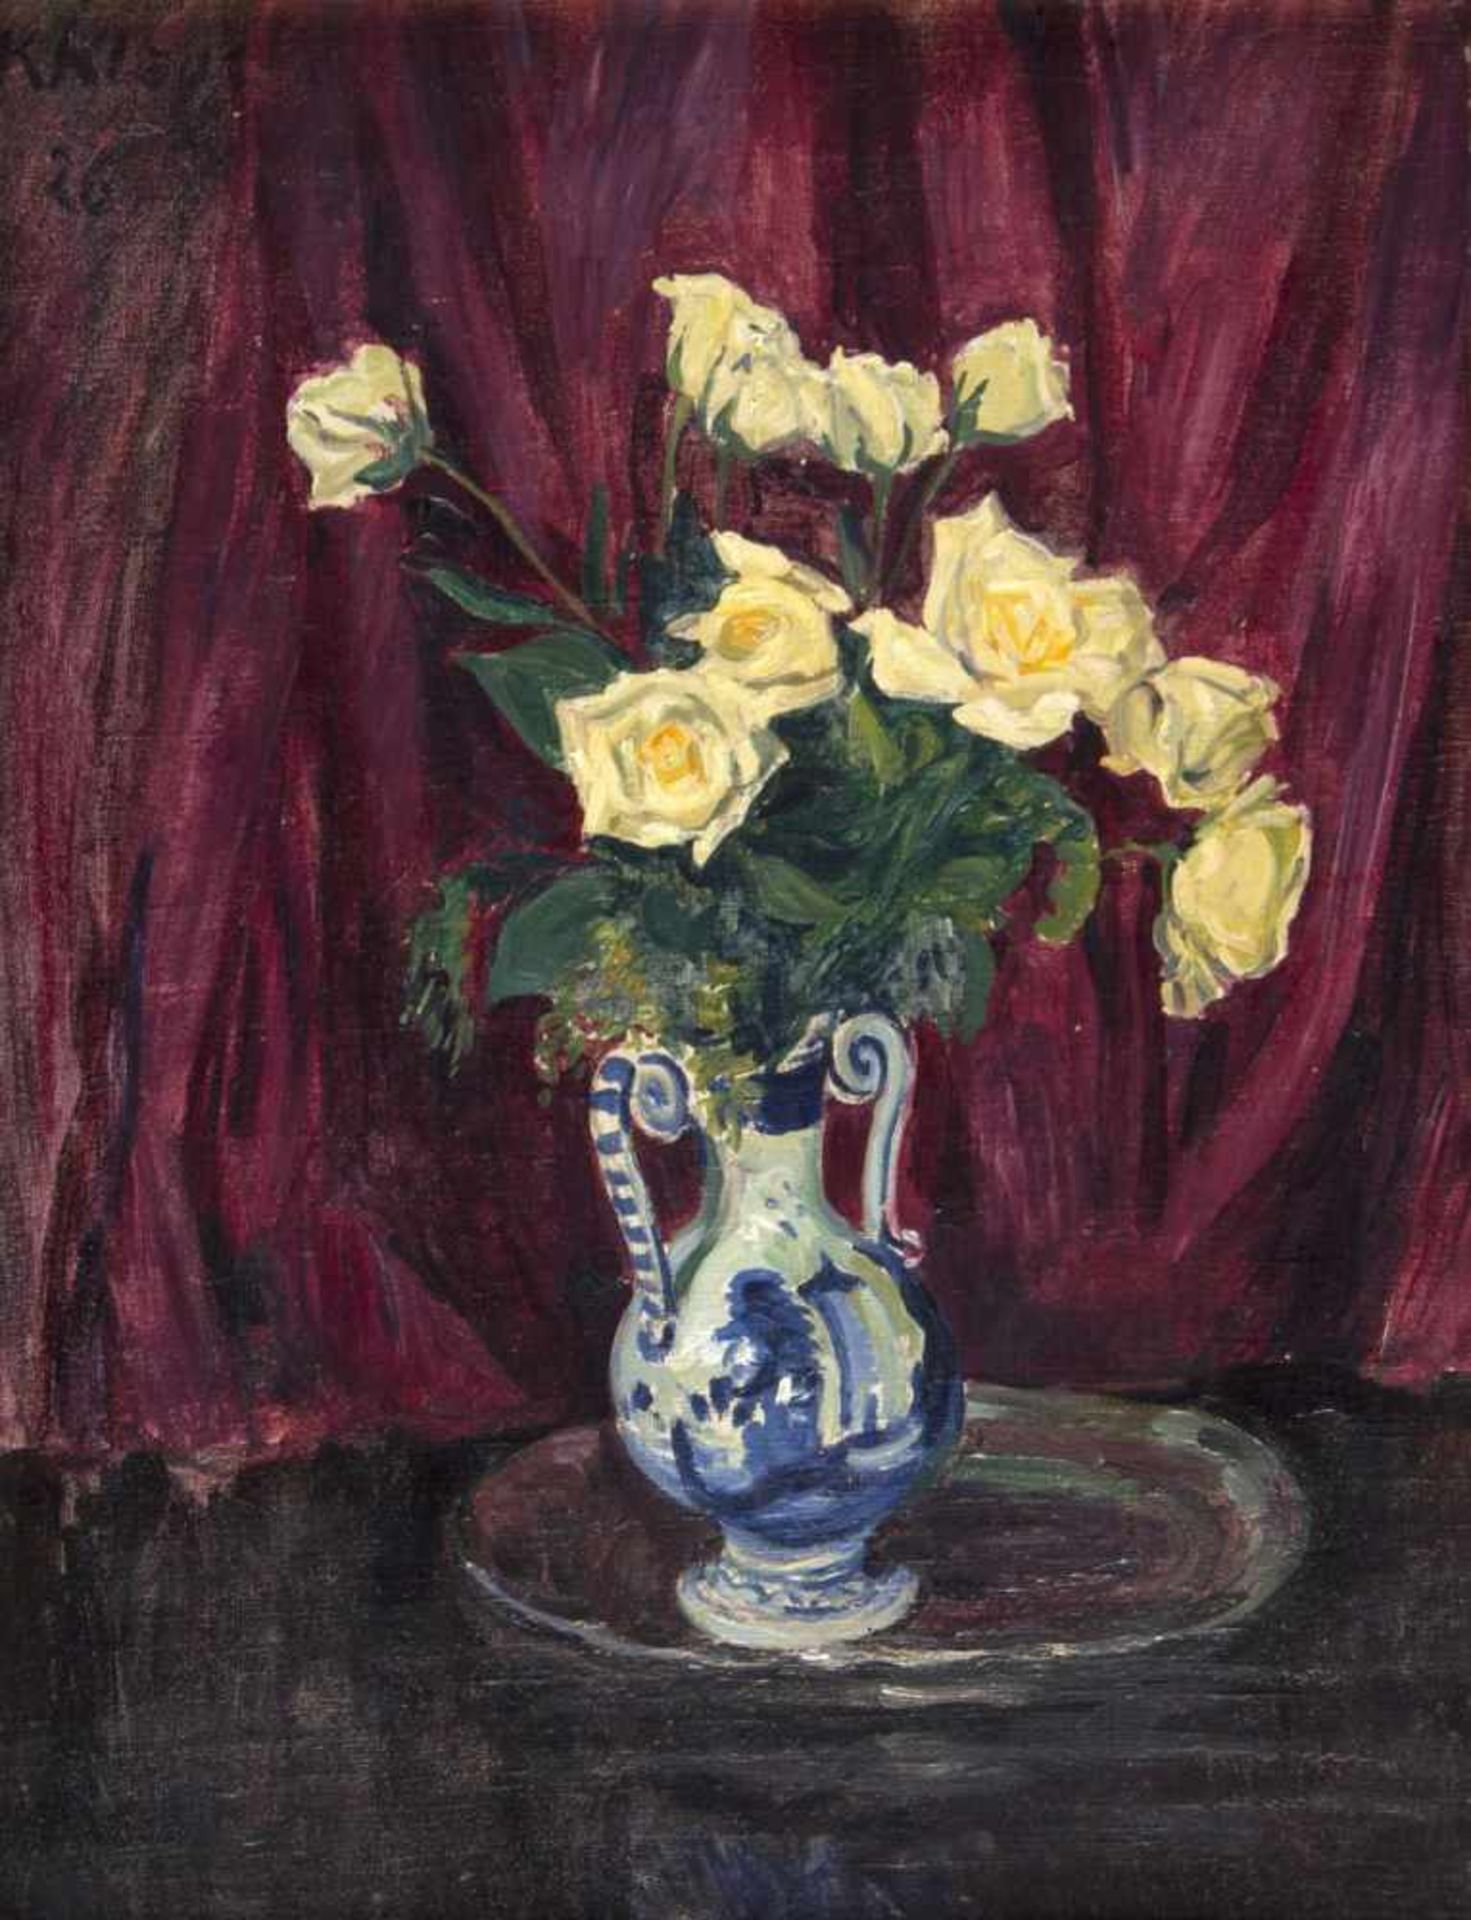 Klaus, Kaspar. 1874 - 1941Gelbe Rosen in einer Vase. Öl/Lwd. Sign. und dat. (19)26. 56 x 43 cm.